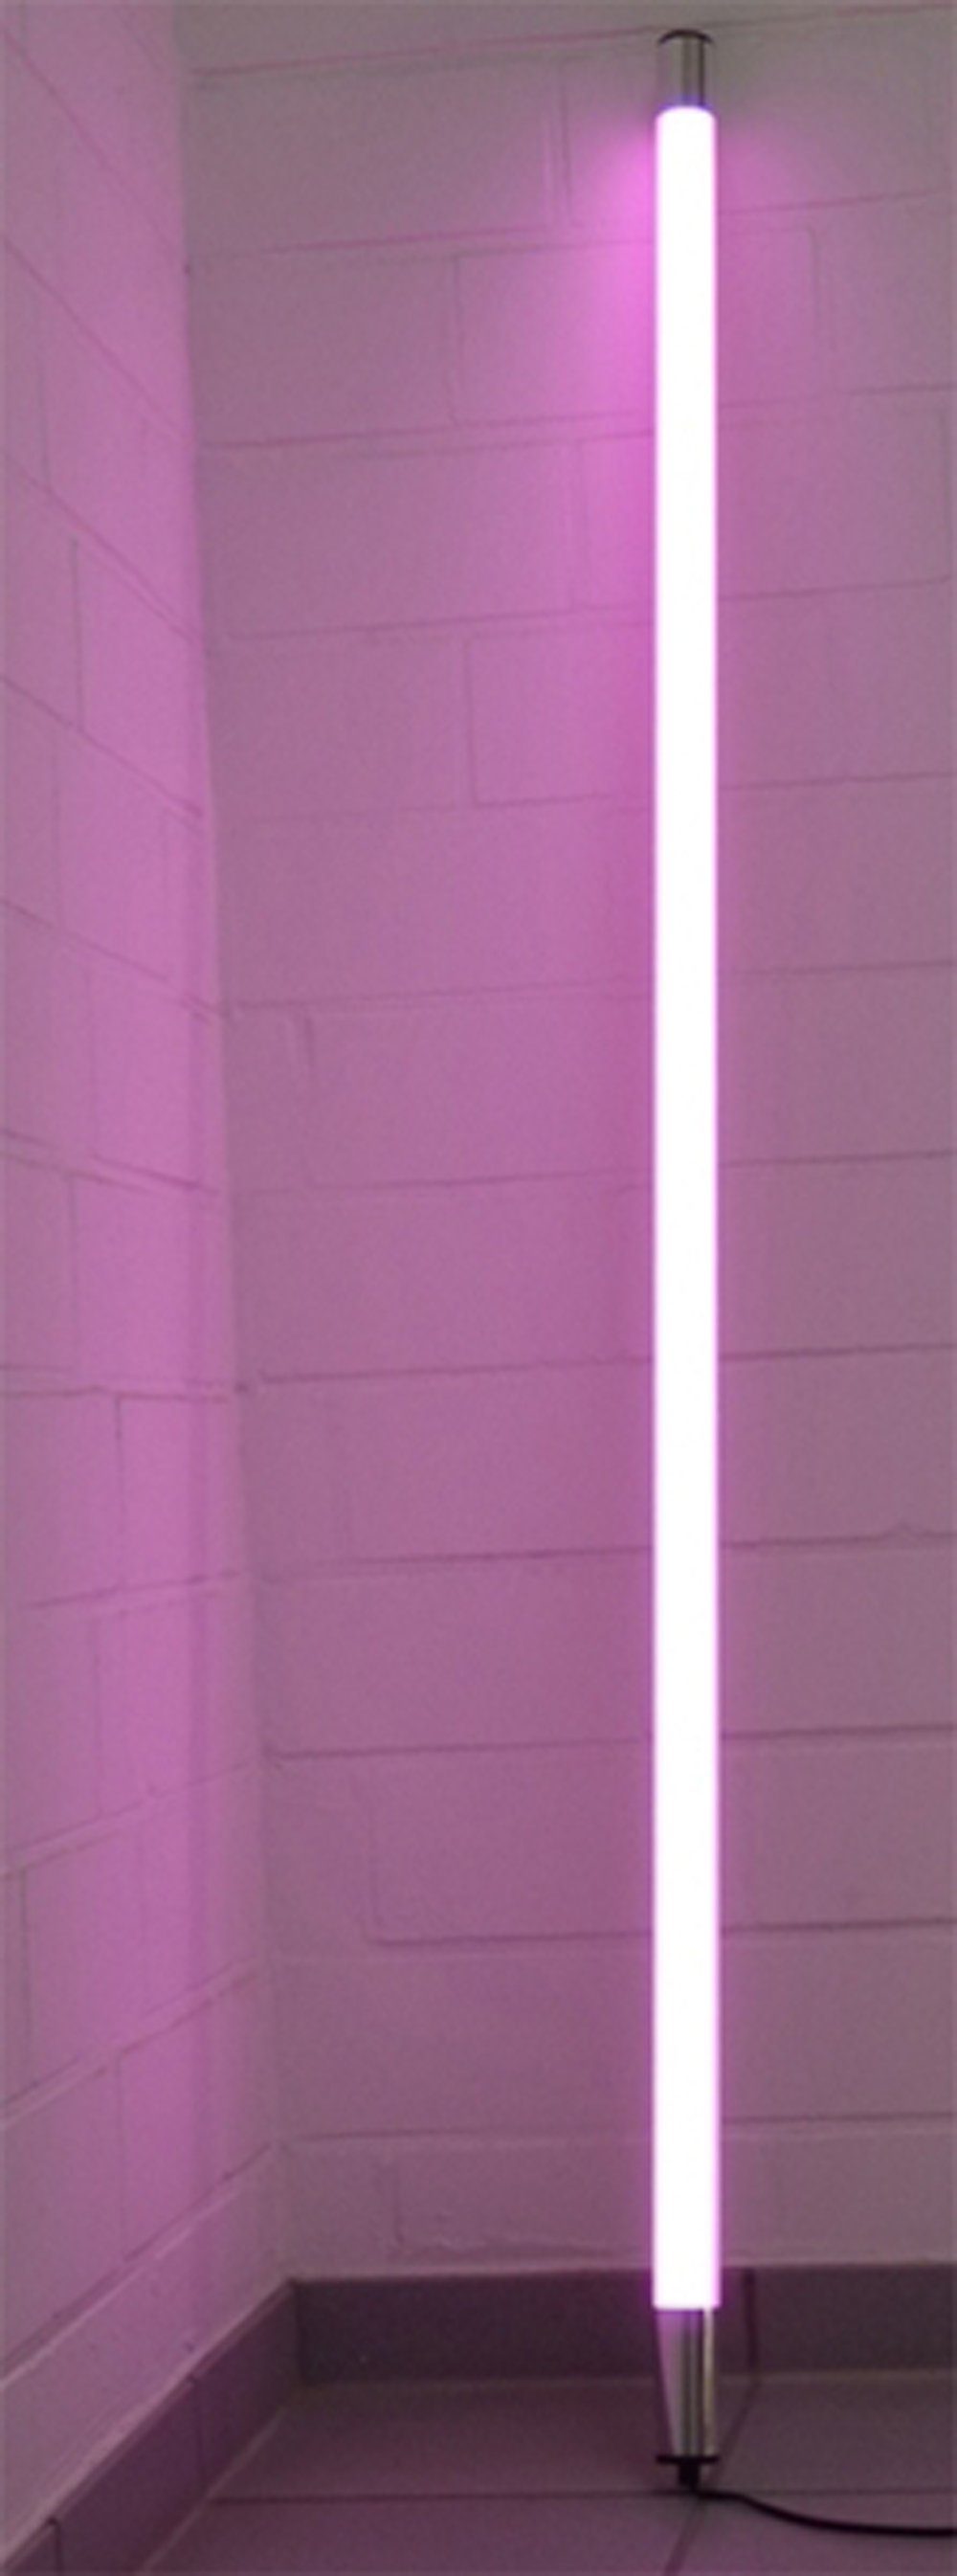 XENON LED Wandleuchte LED Leuchtstab Satiniert 0,63m Länge 950 Lumen IP44 für Außen Pink, LED Röhre T8, Xenon